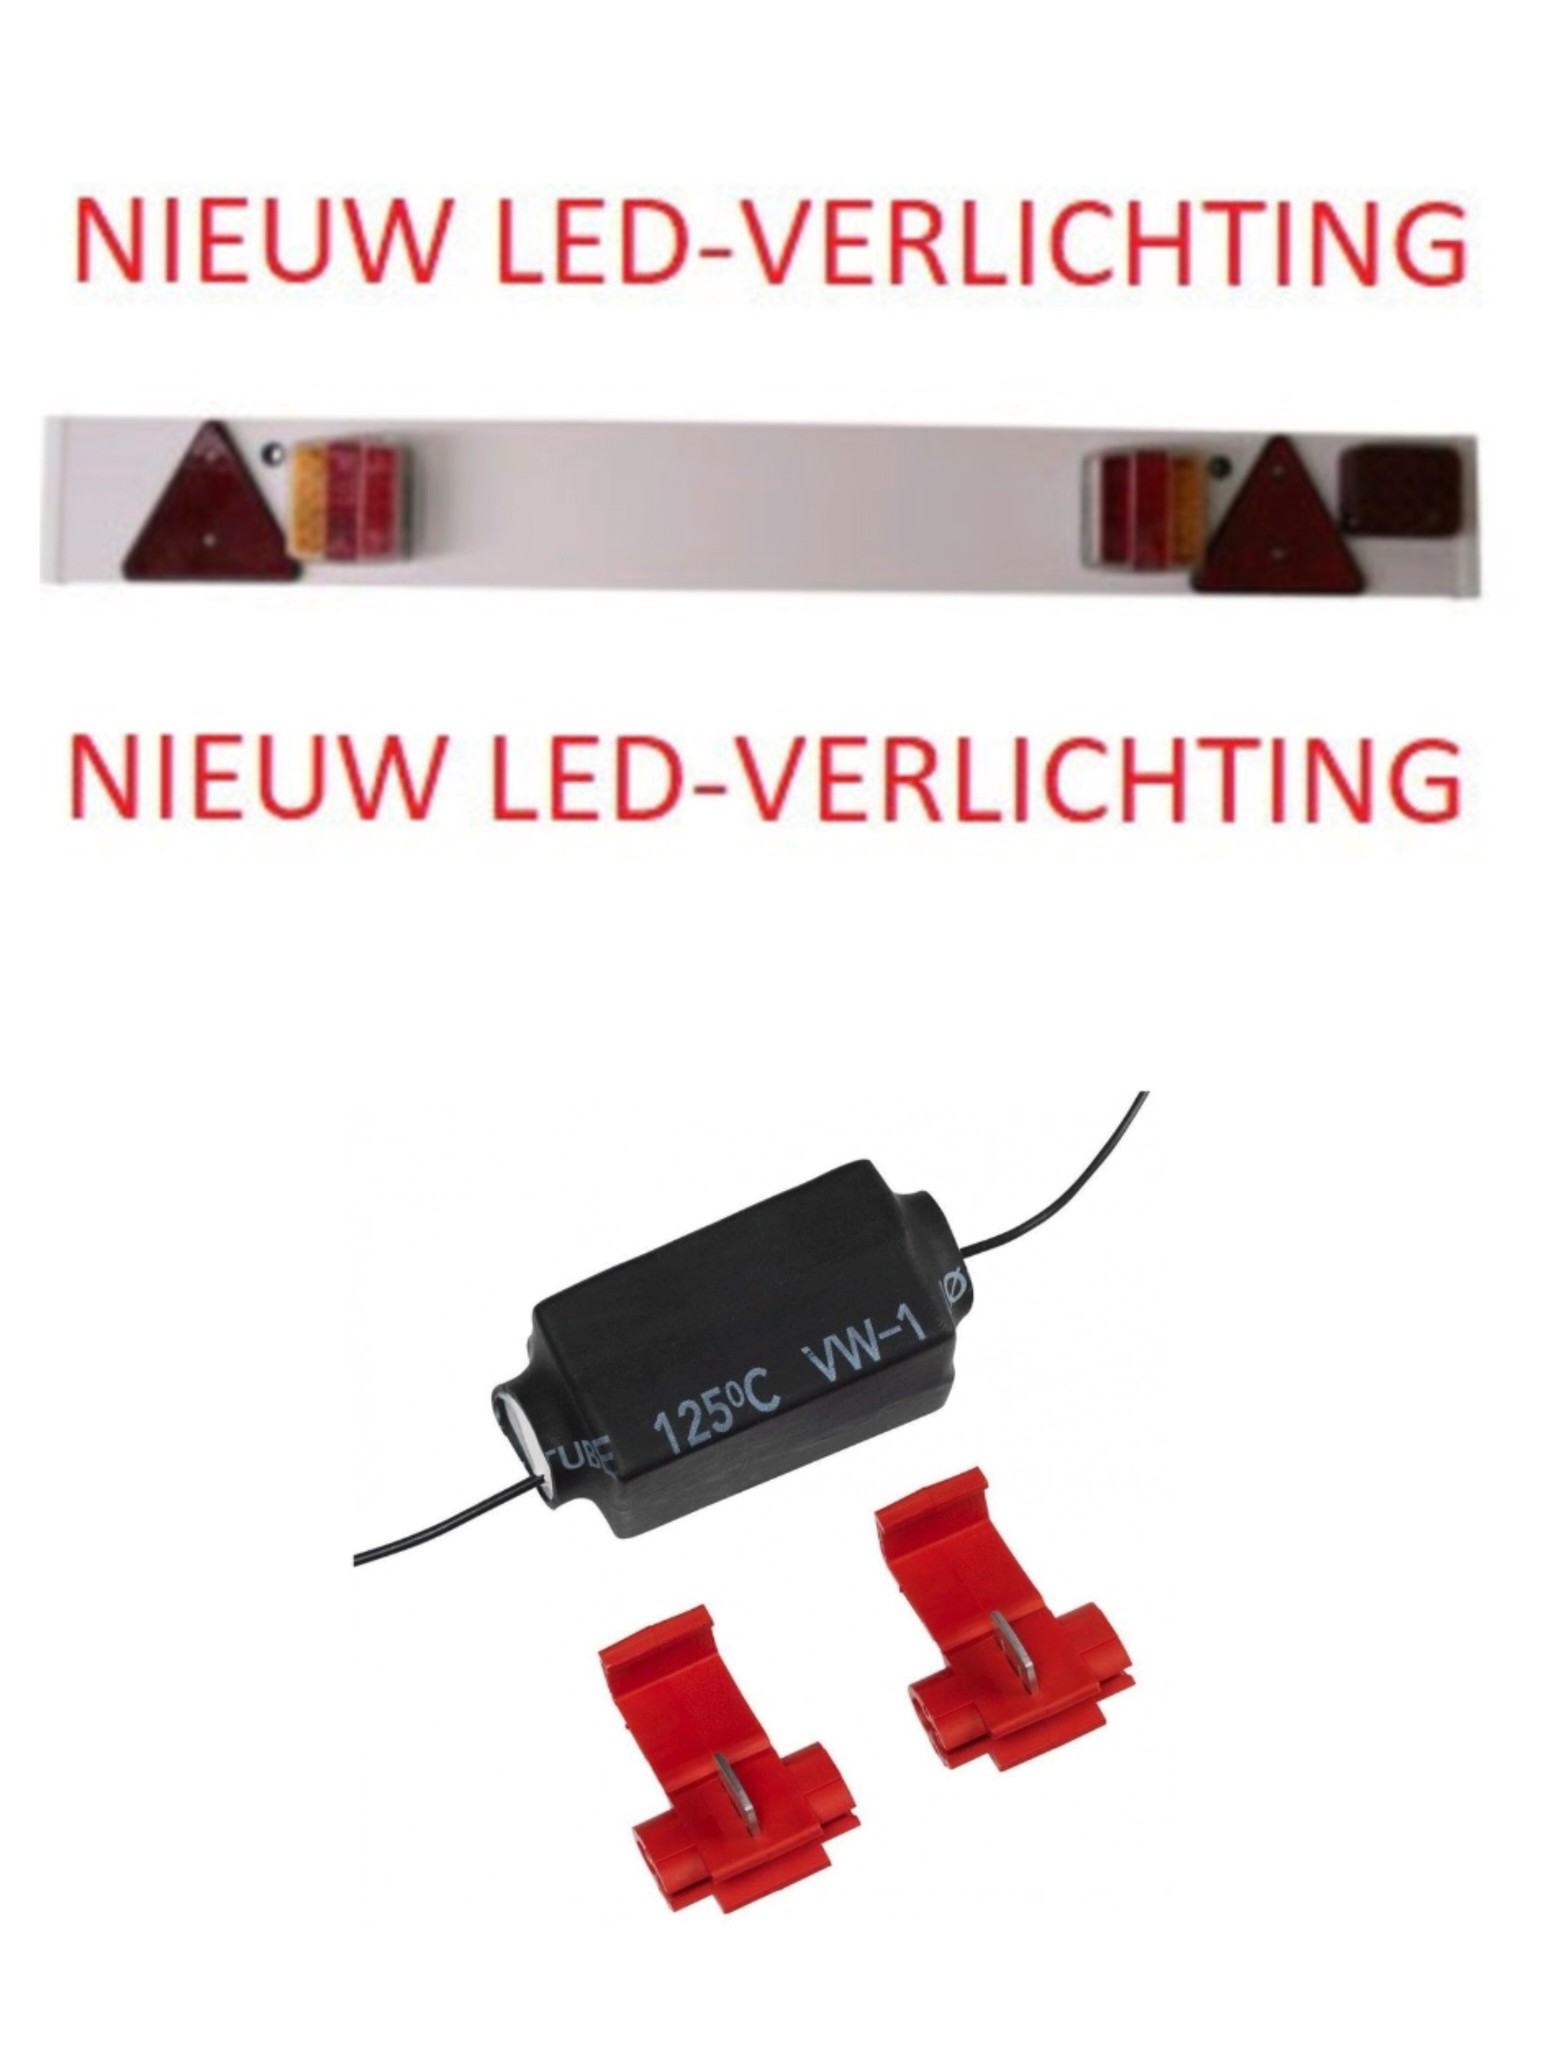 VERLICHTINGSBALK LED-VERLICHTING MISTLICHT EN 9 METER KABEL Aspius.nl